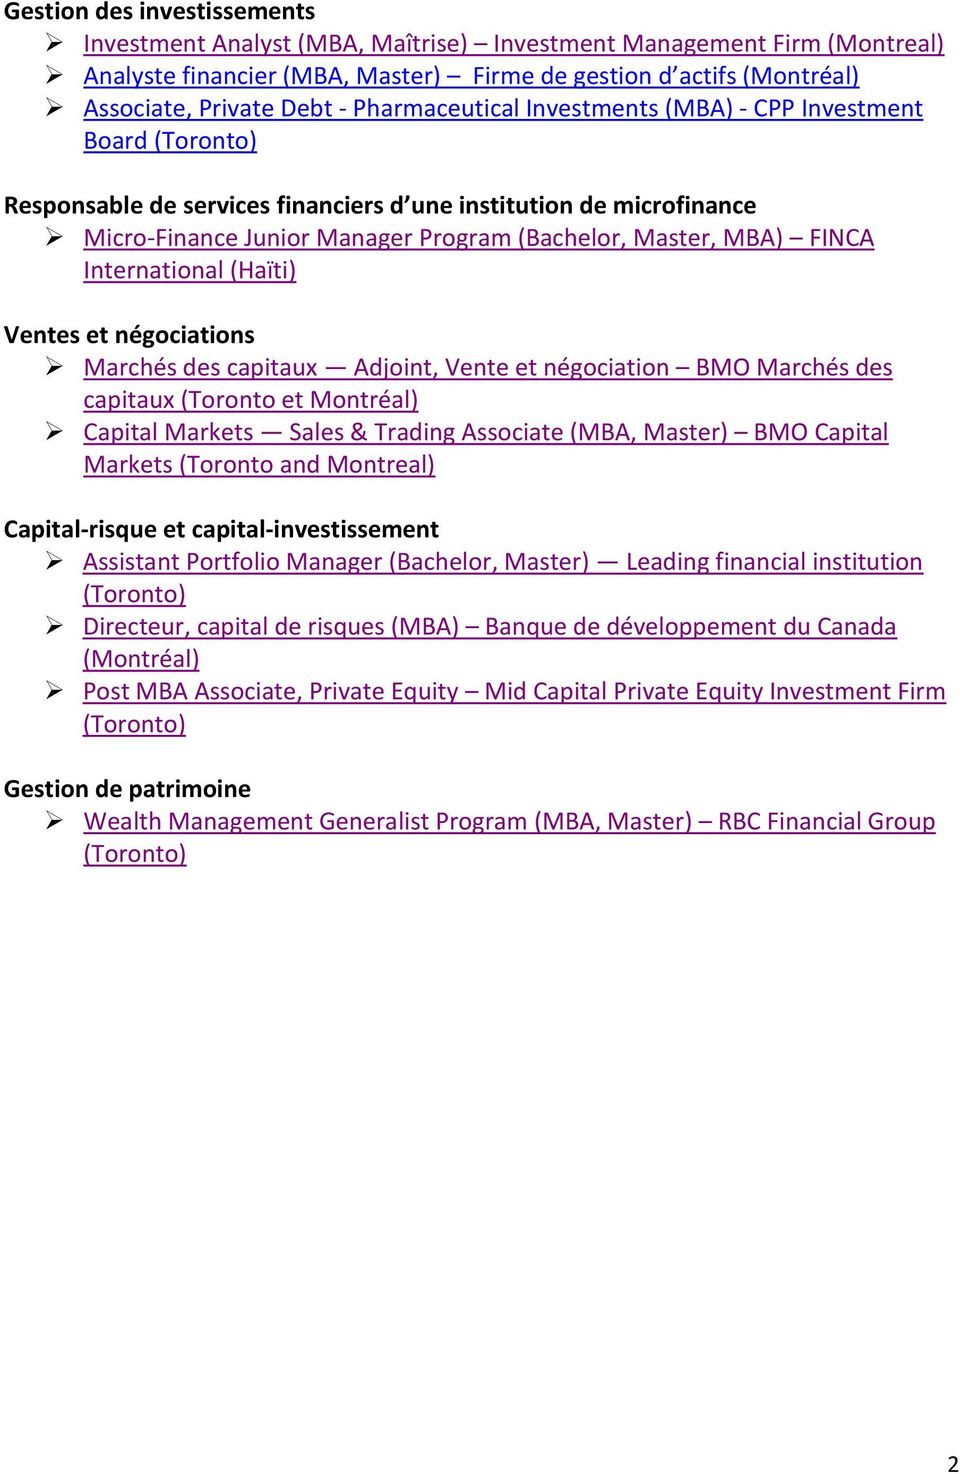 FINCA International (Haïti) Ventes et négociations Marchés des capitaux Adjoint, Vente et négociation BMO Marchés des capitaux (Toronto et Montréal) Capital Markets Sales & Trading Associate (MBA,